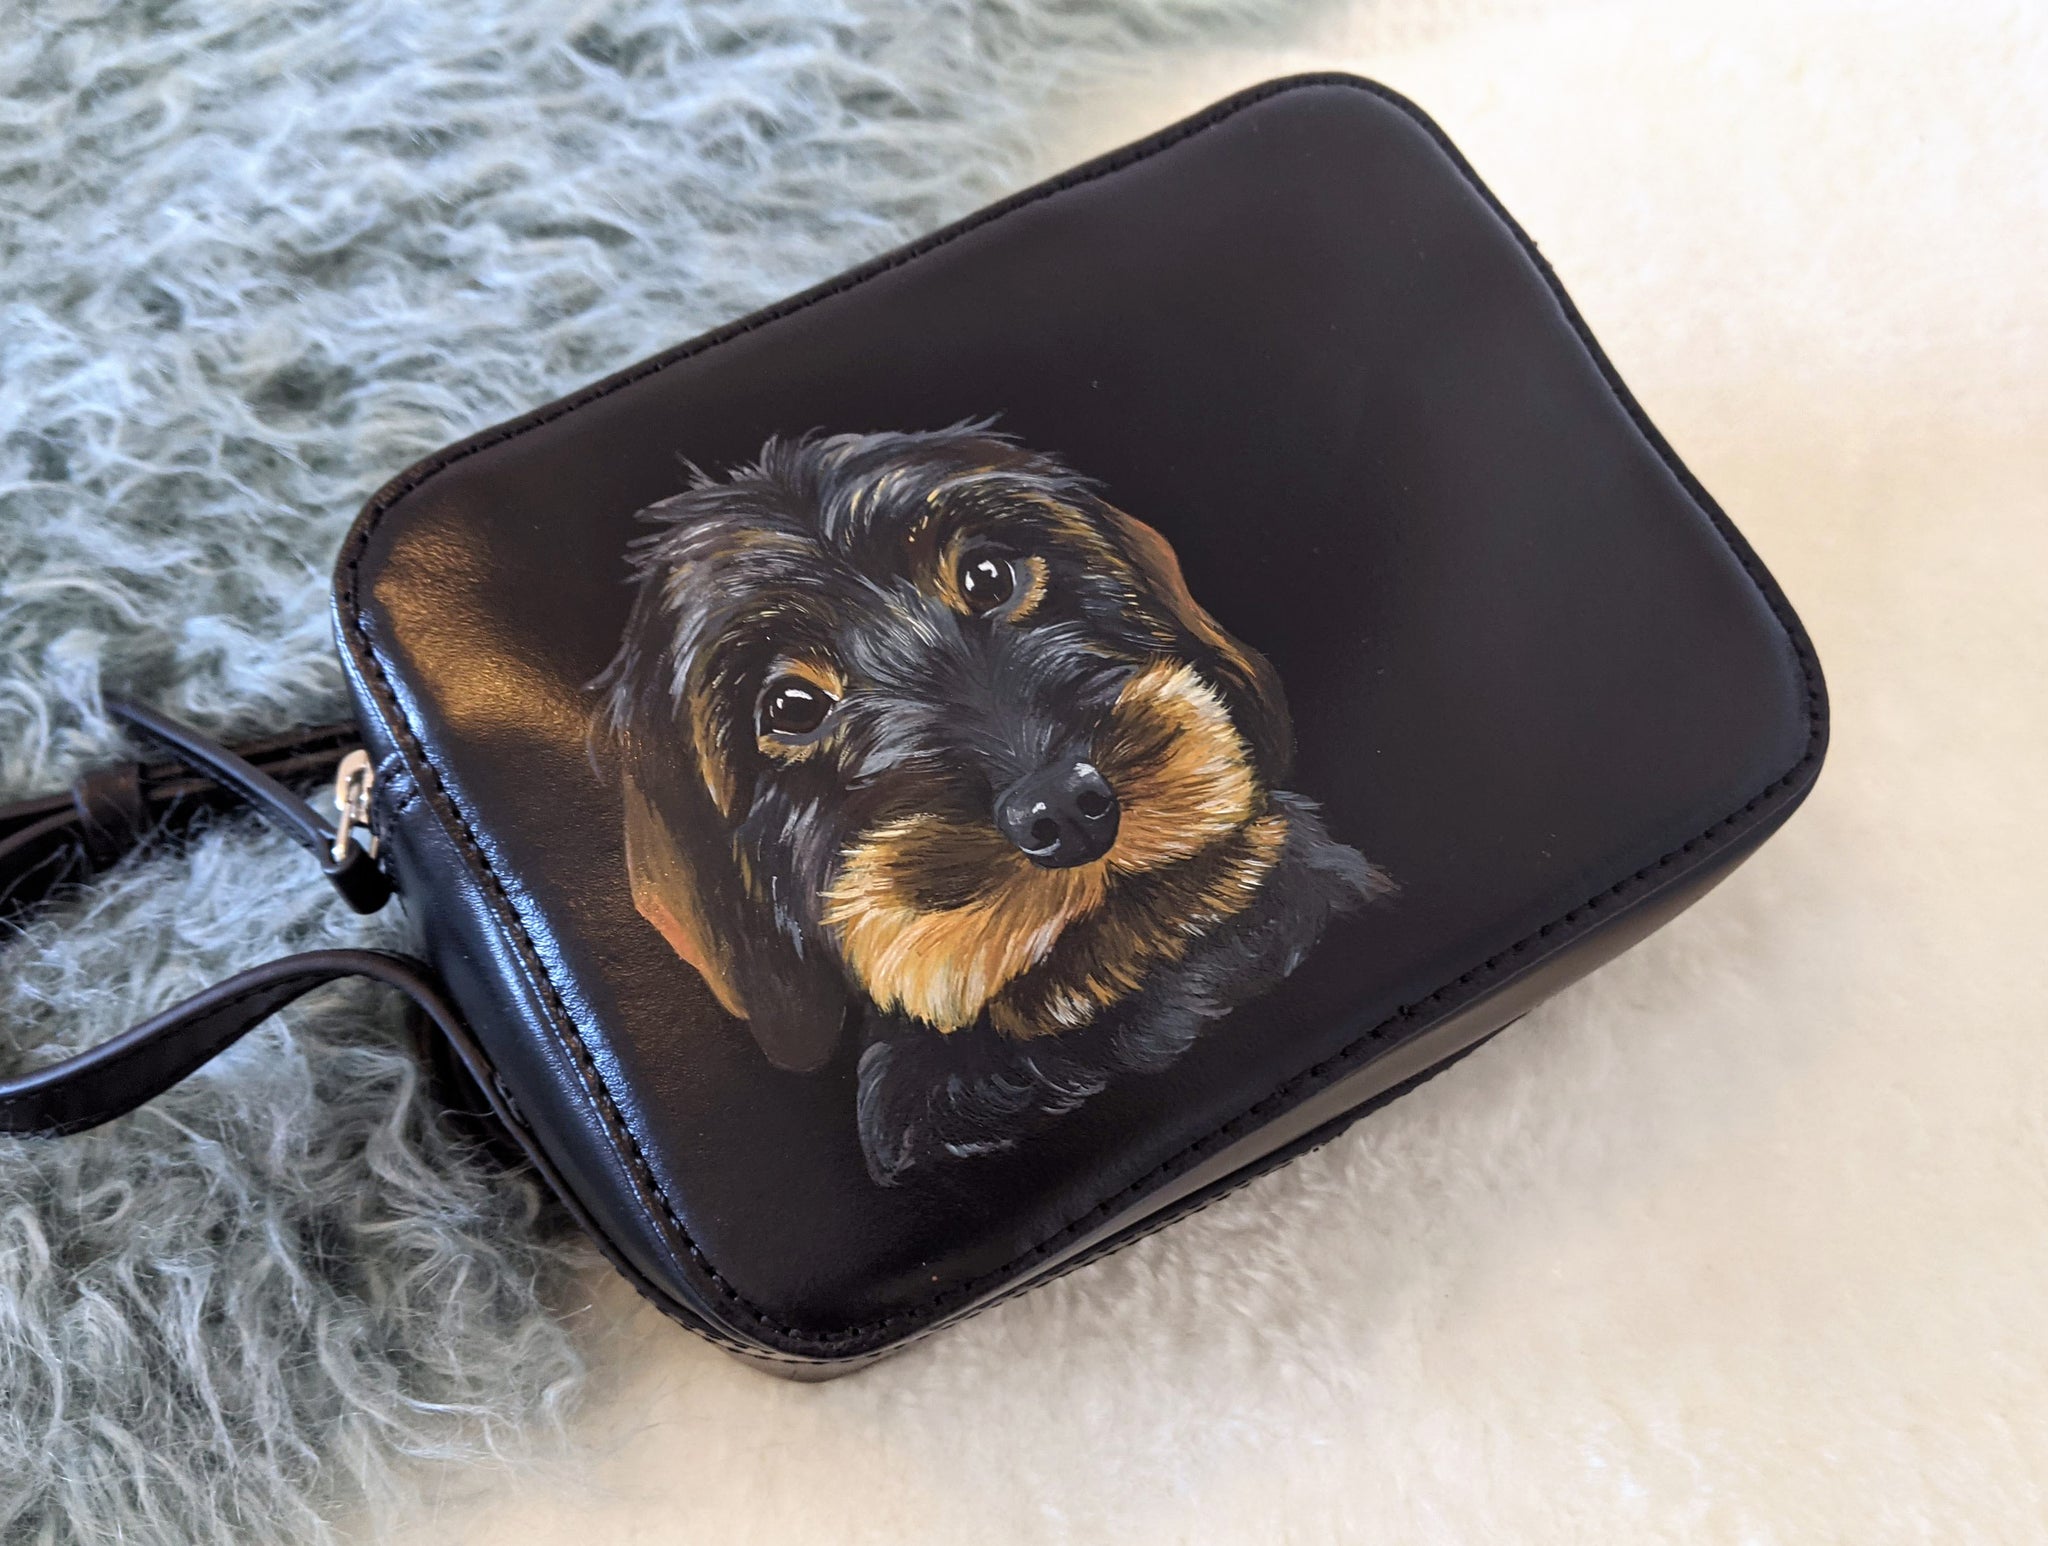 Irish Wolfhound/Kelpie Mix Shoulder Bag - Cathy Ann's Deals